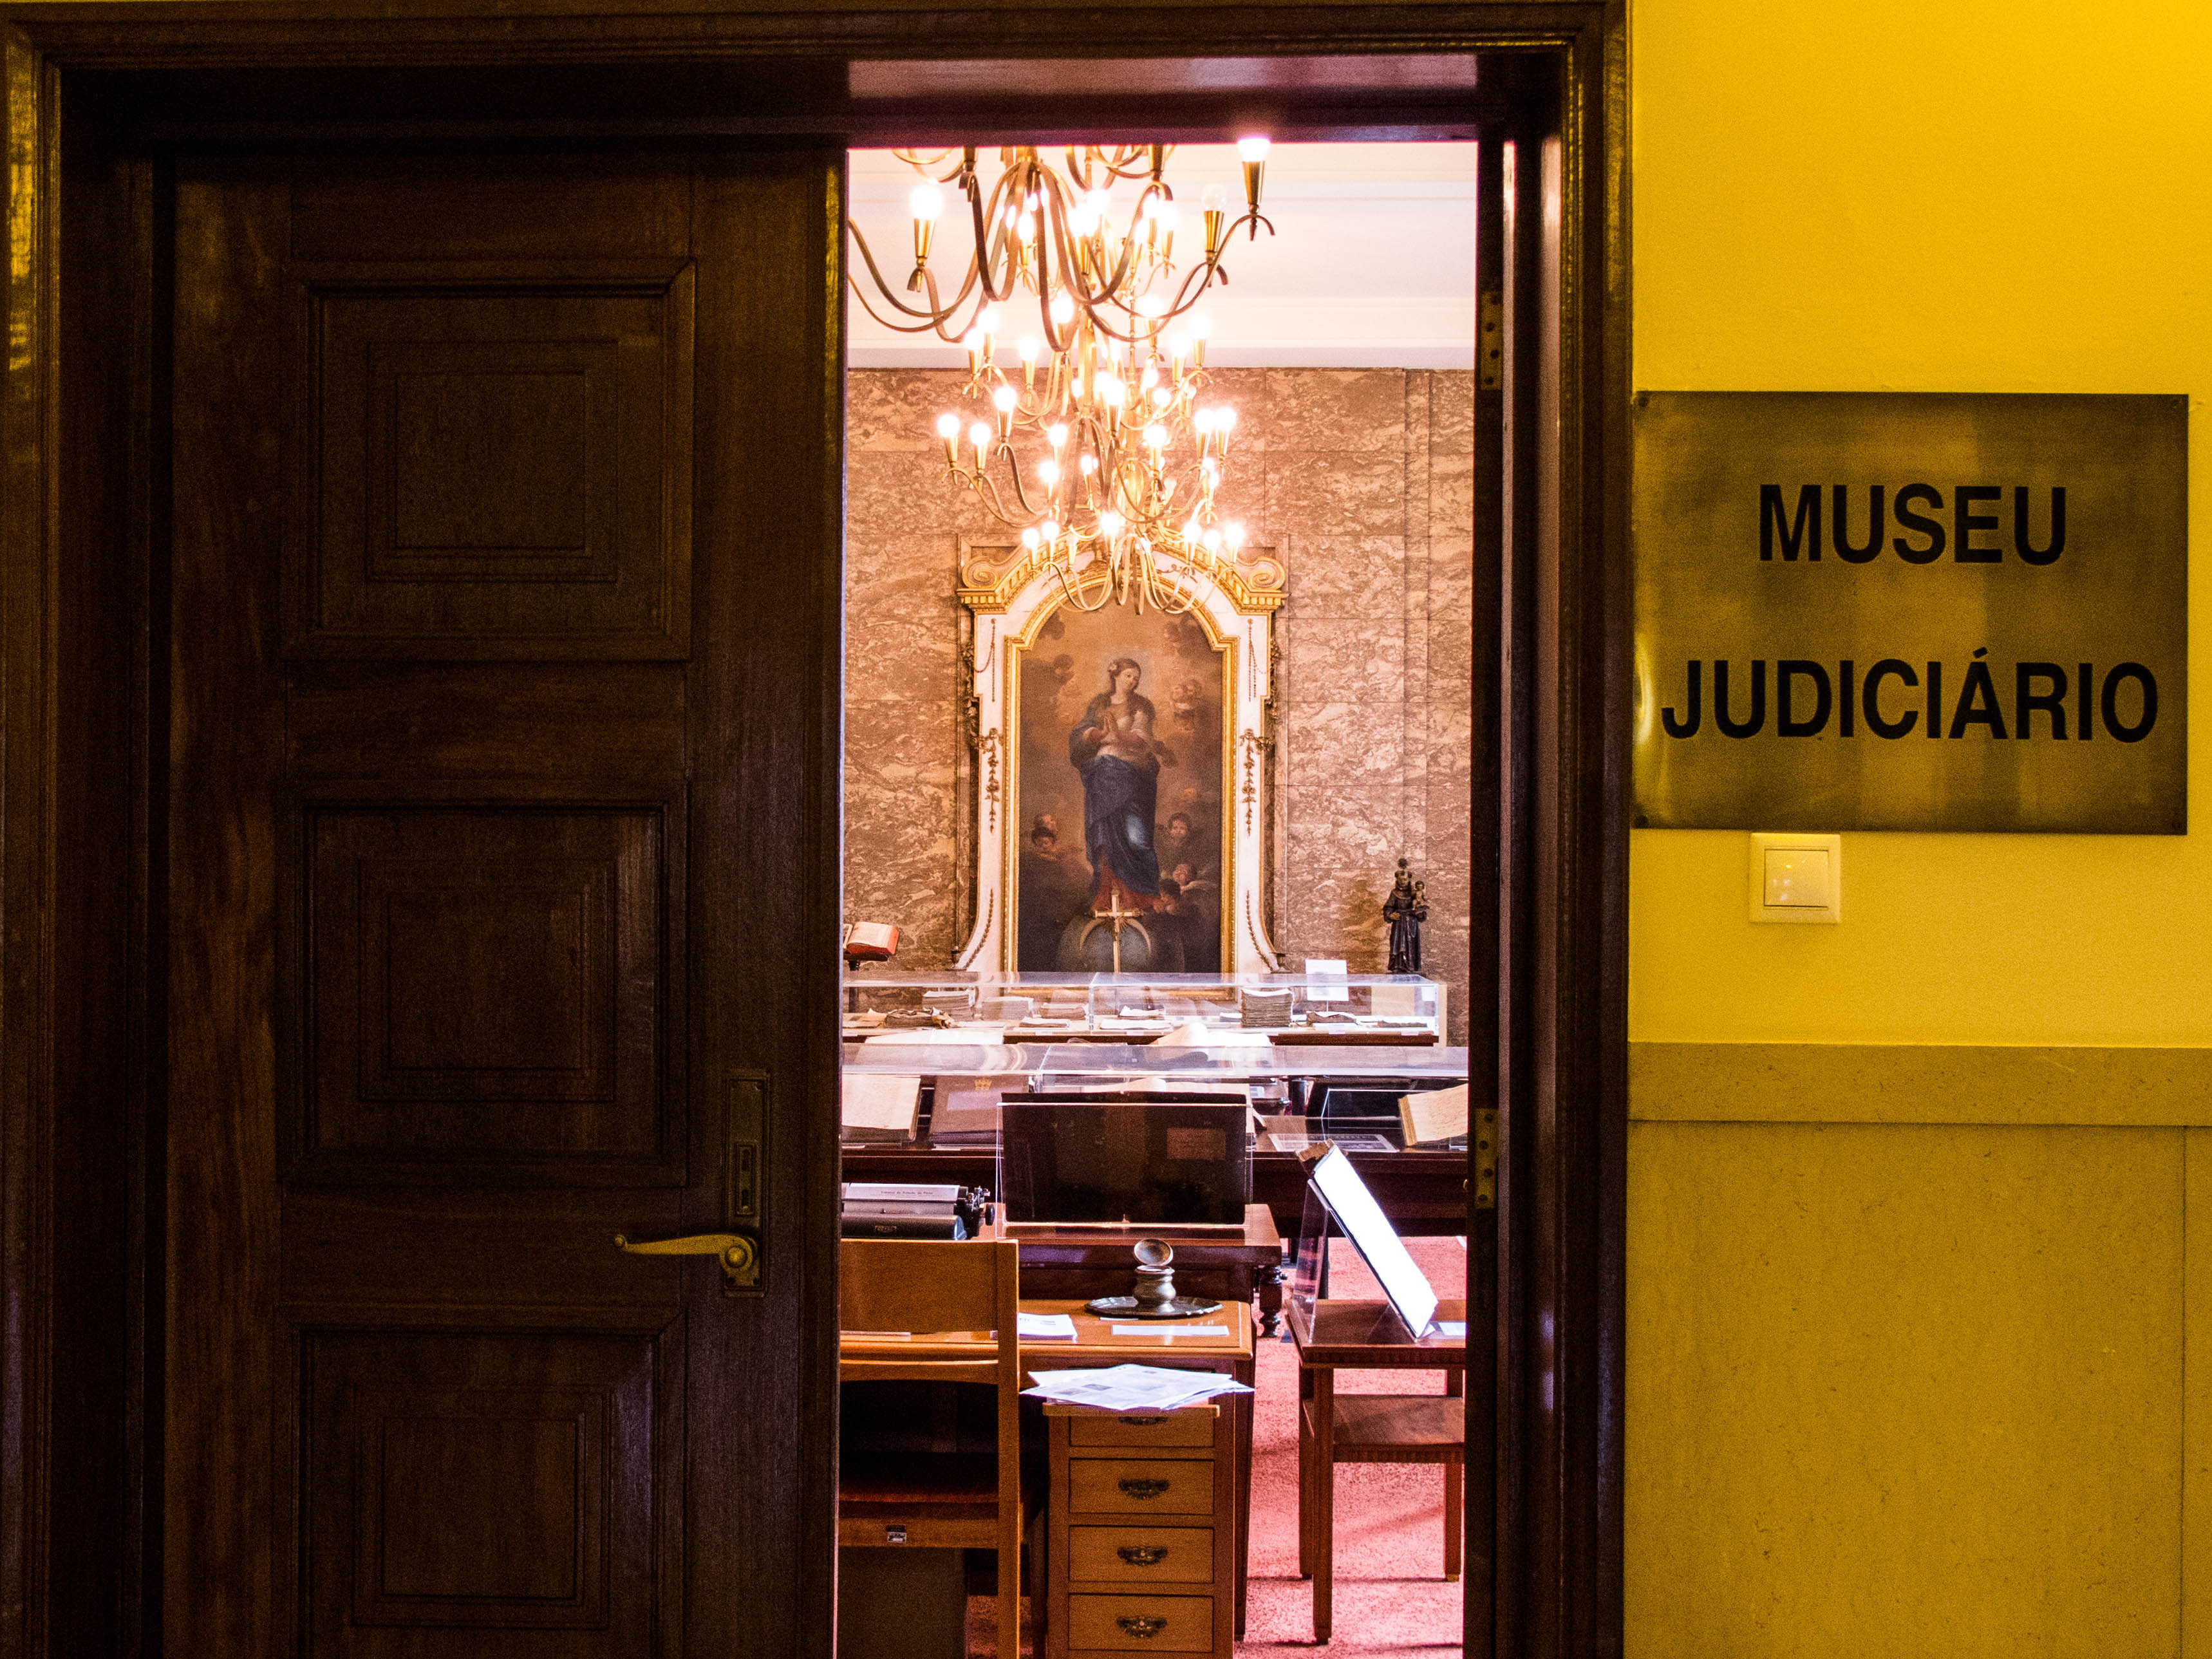 Uma porta aberta revela o interior do museu Judiciário no Palácio da Justiça